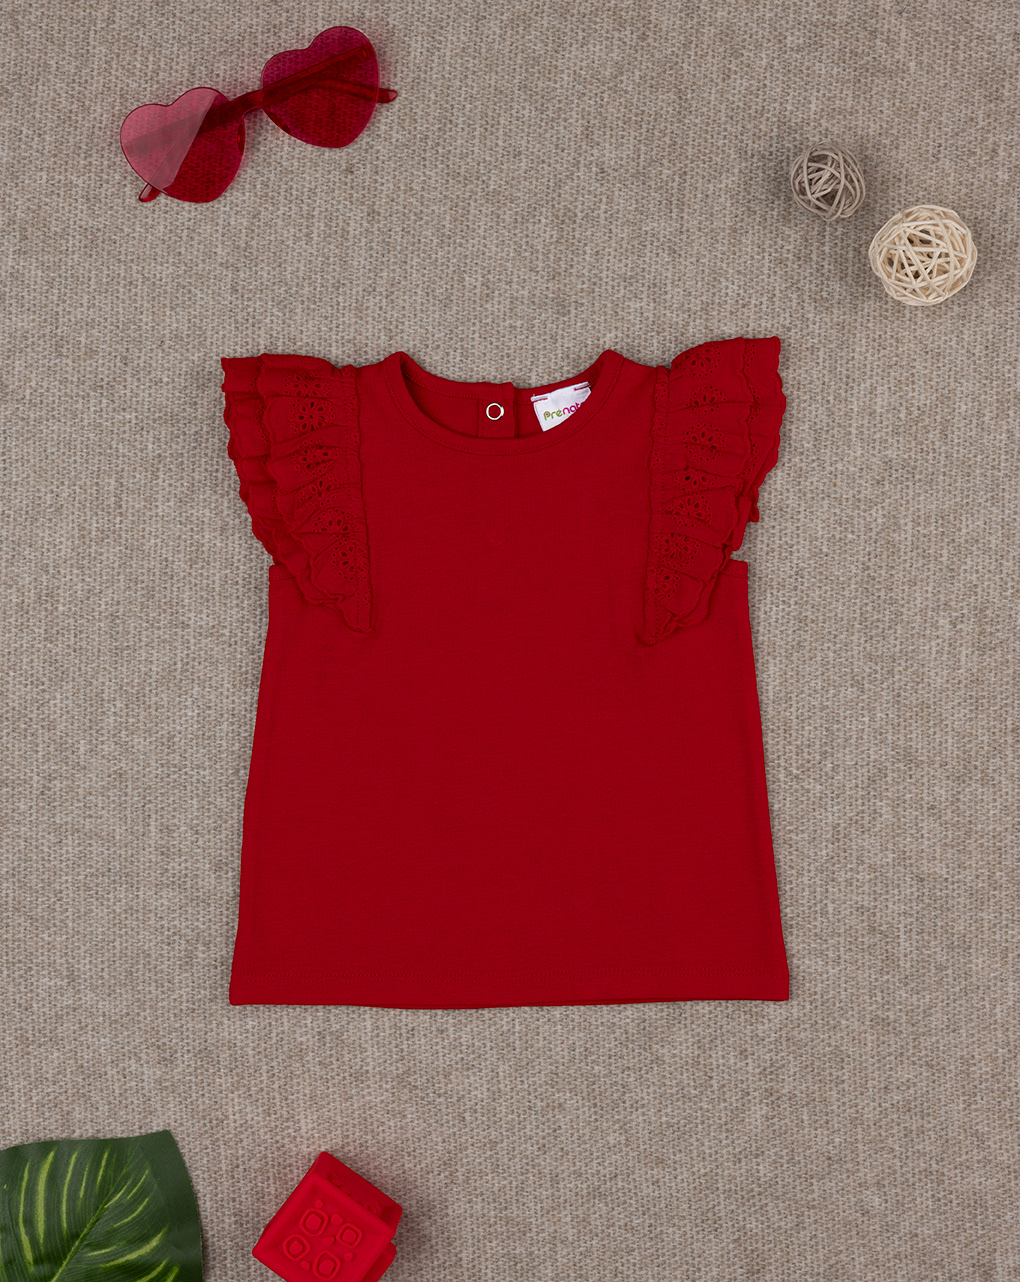 βρεφικό t-shirt κόκκινο με δαντέλα sangallo για κορίτσι